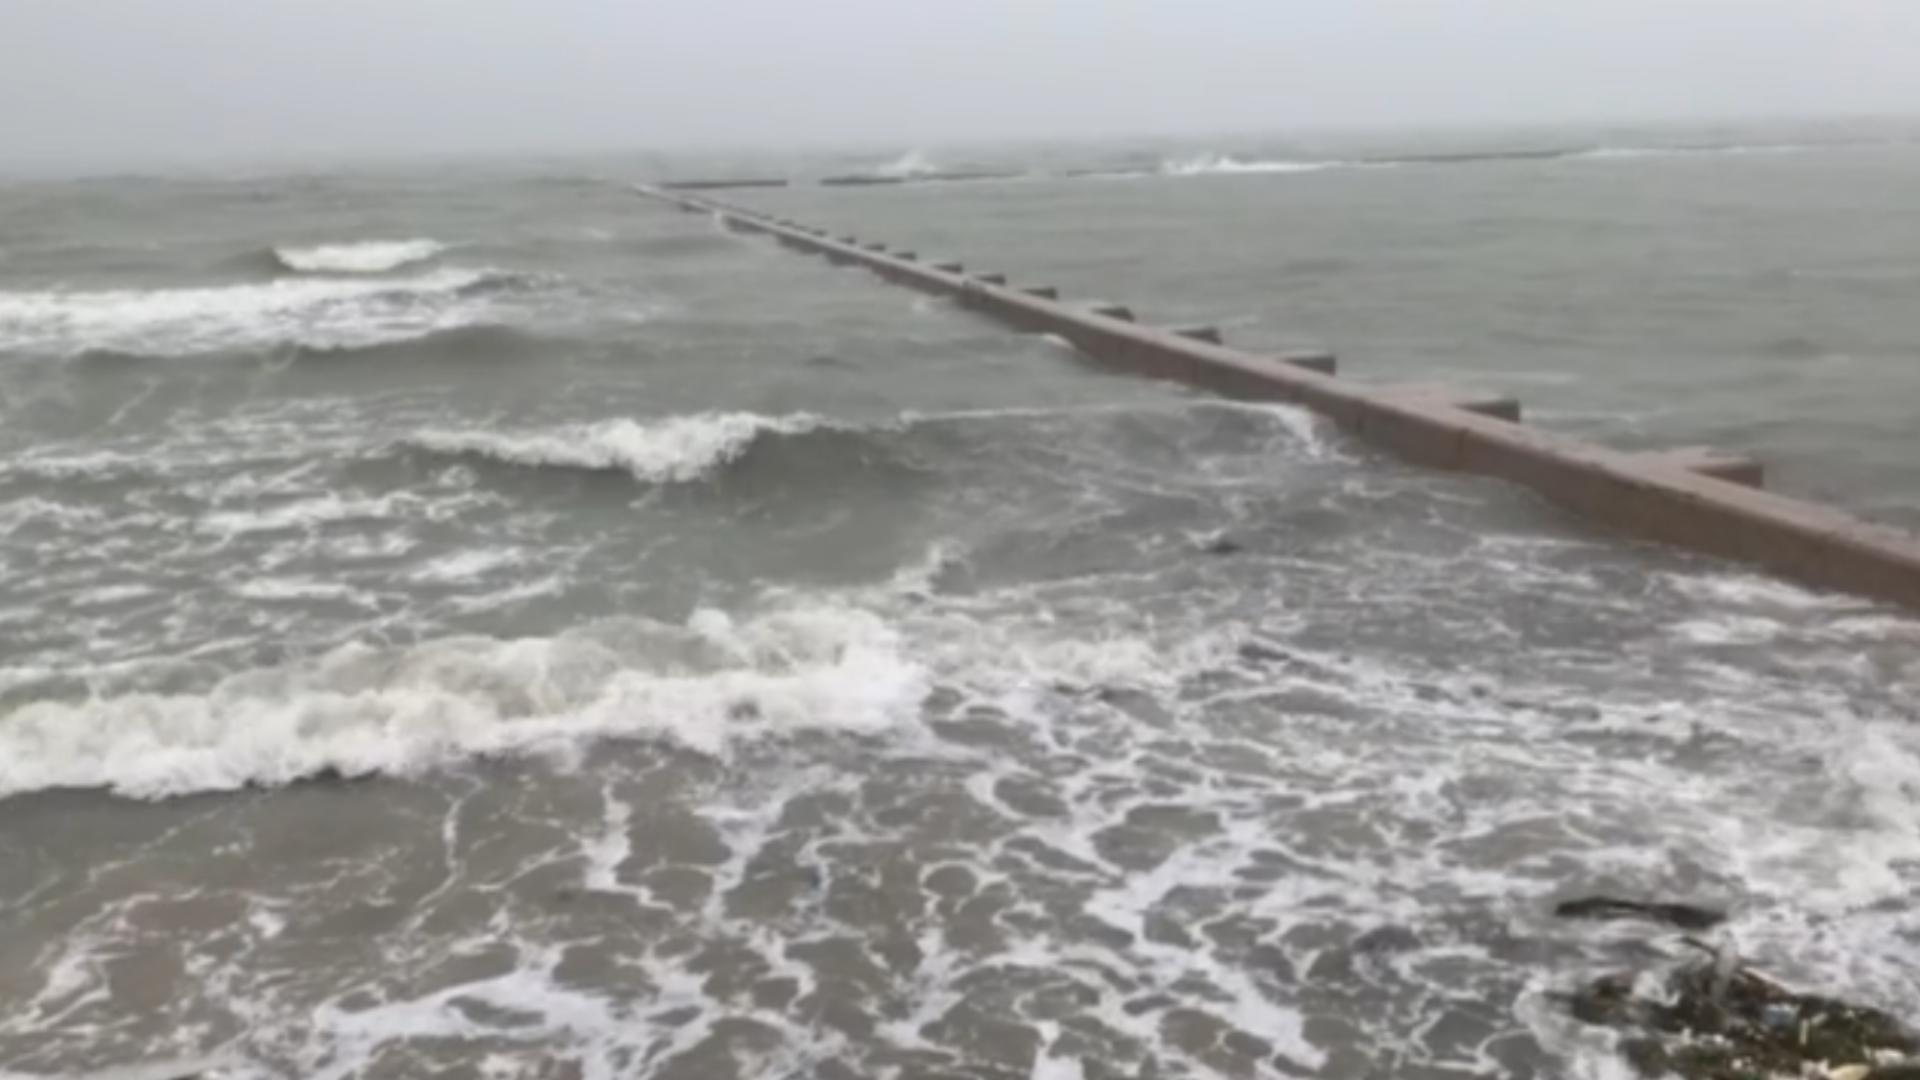 9:35 AM Wednesday- Waves crashing at holiday inn express on shoreline.